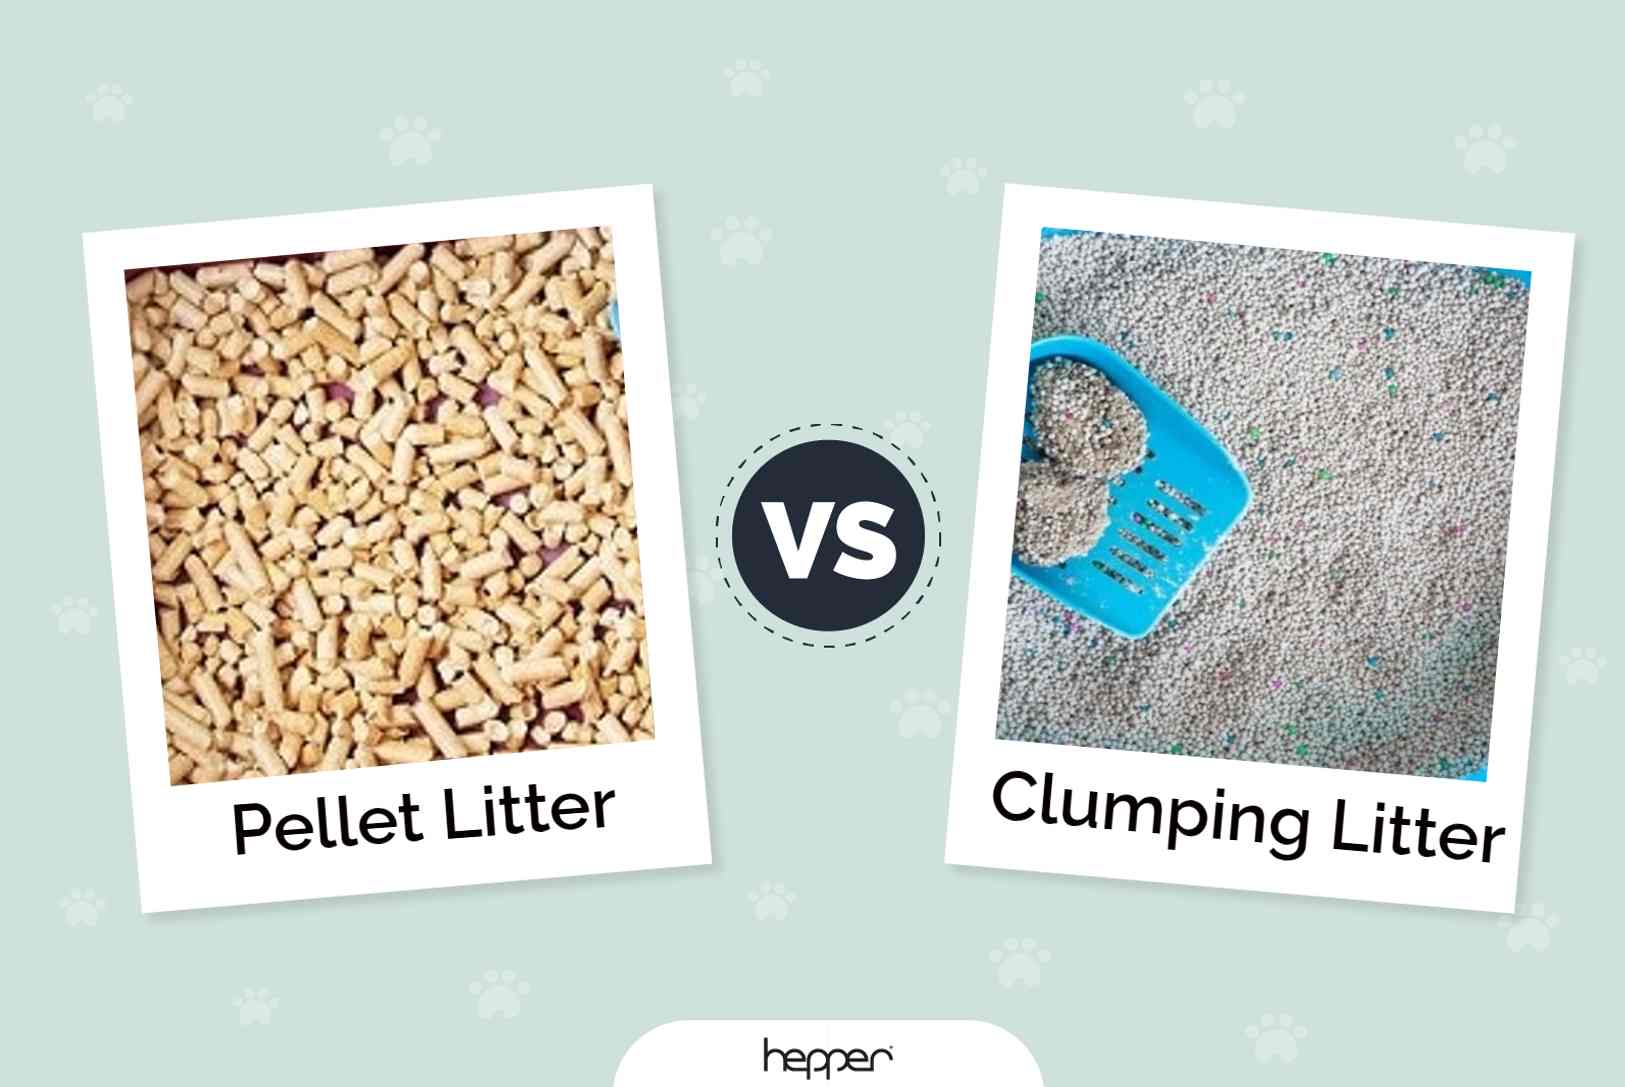 Pellet litter vs clumping litter